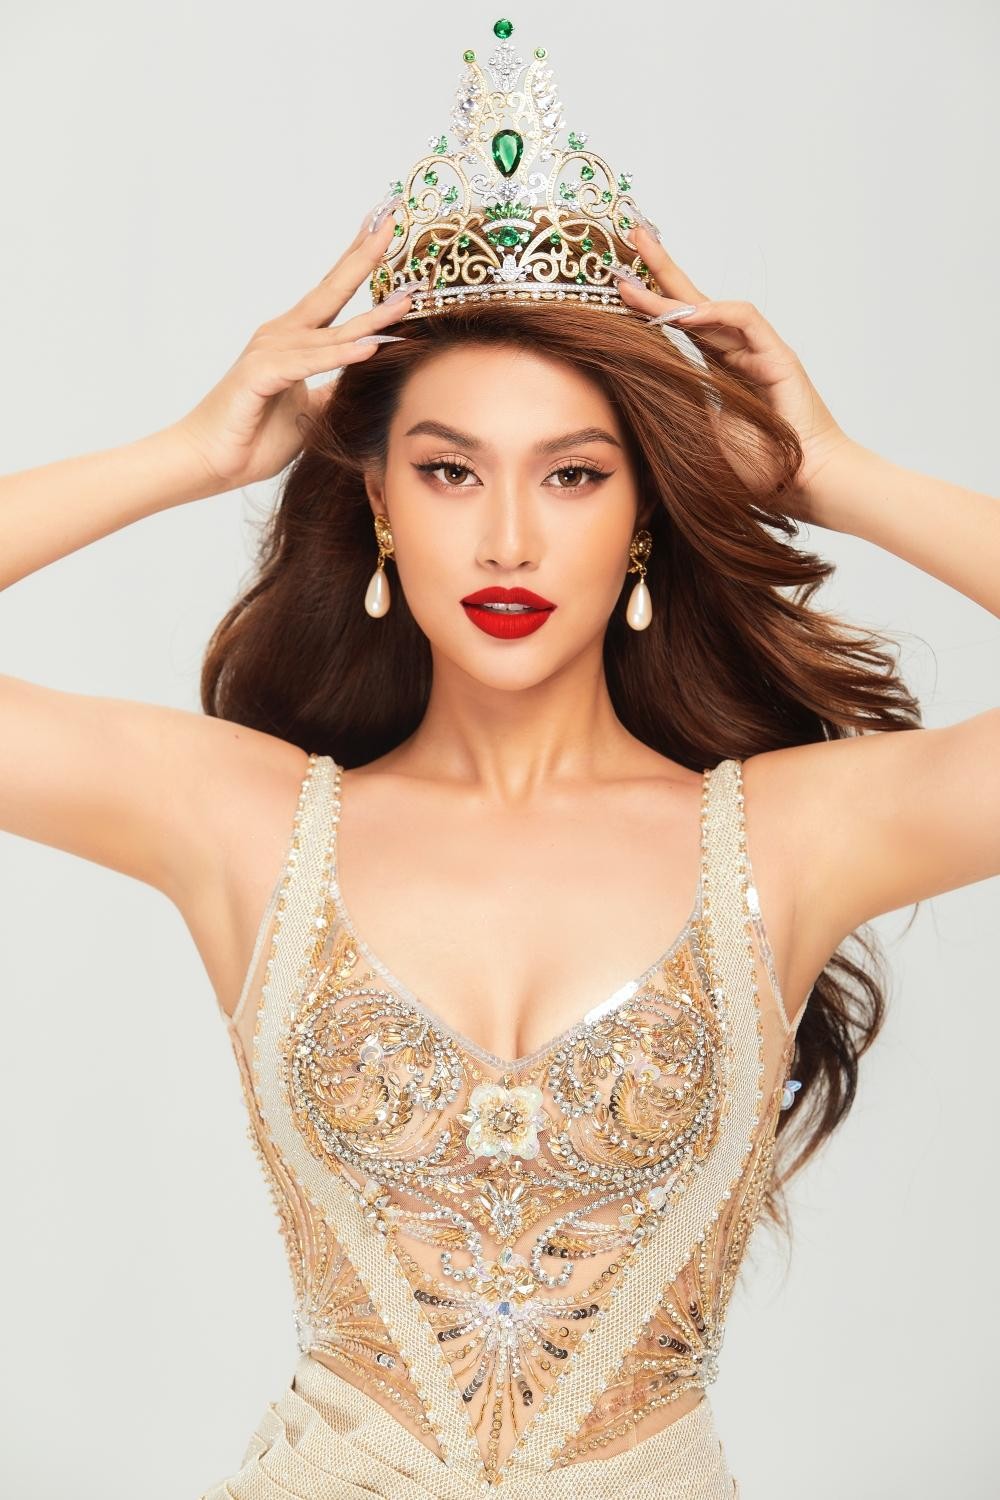 Hoa hậu Thiên Ân tung ảnh khoe vóc dáng “đồng hồ cát” trước ngày dự Miss Grand International 2022 - Ảnh 1.